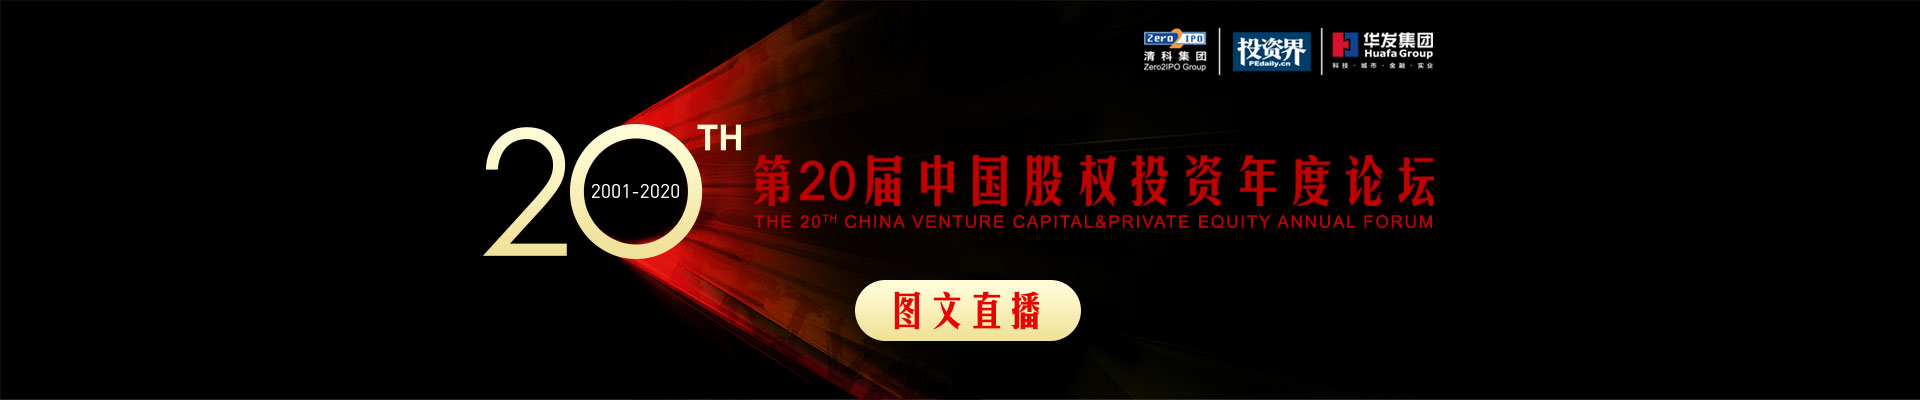 投资界第二十届中国股权投资年度论坛